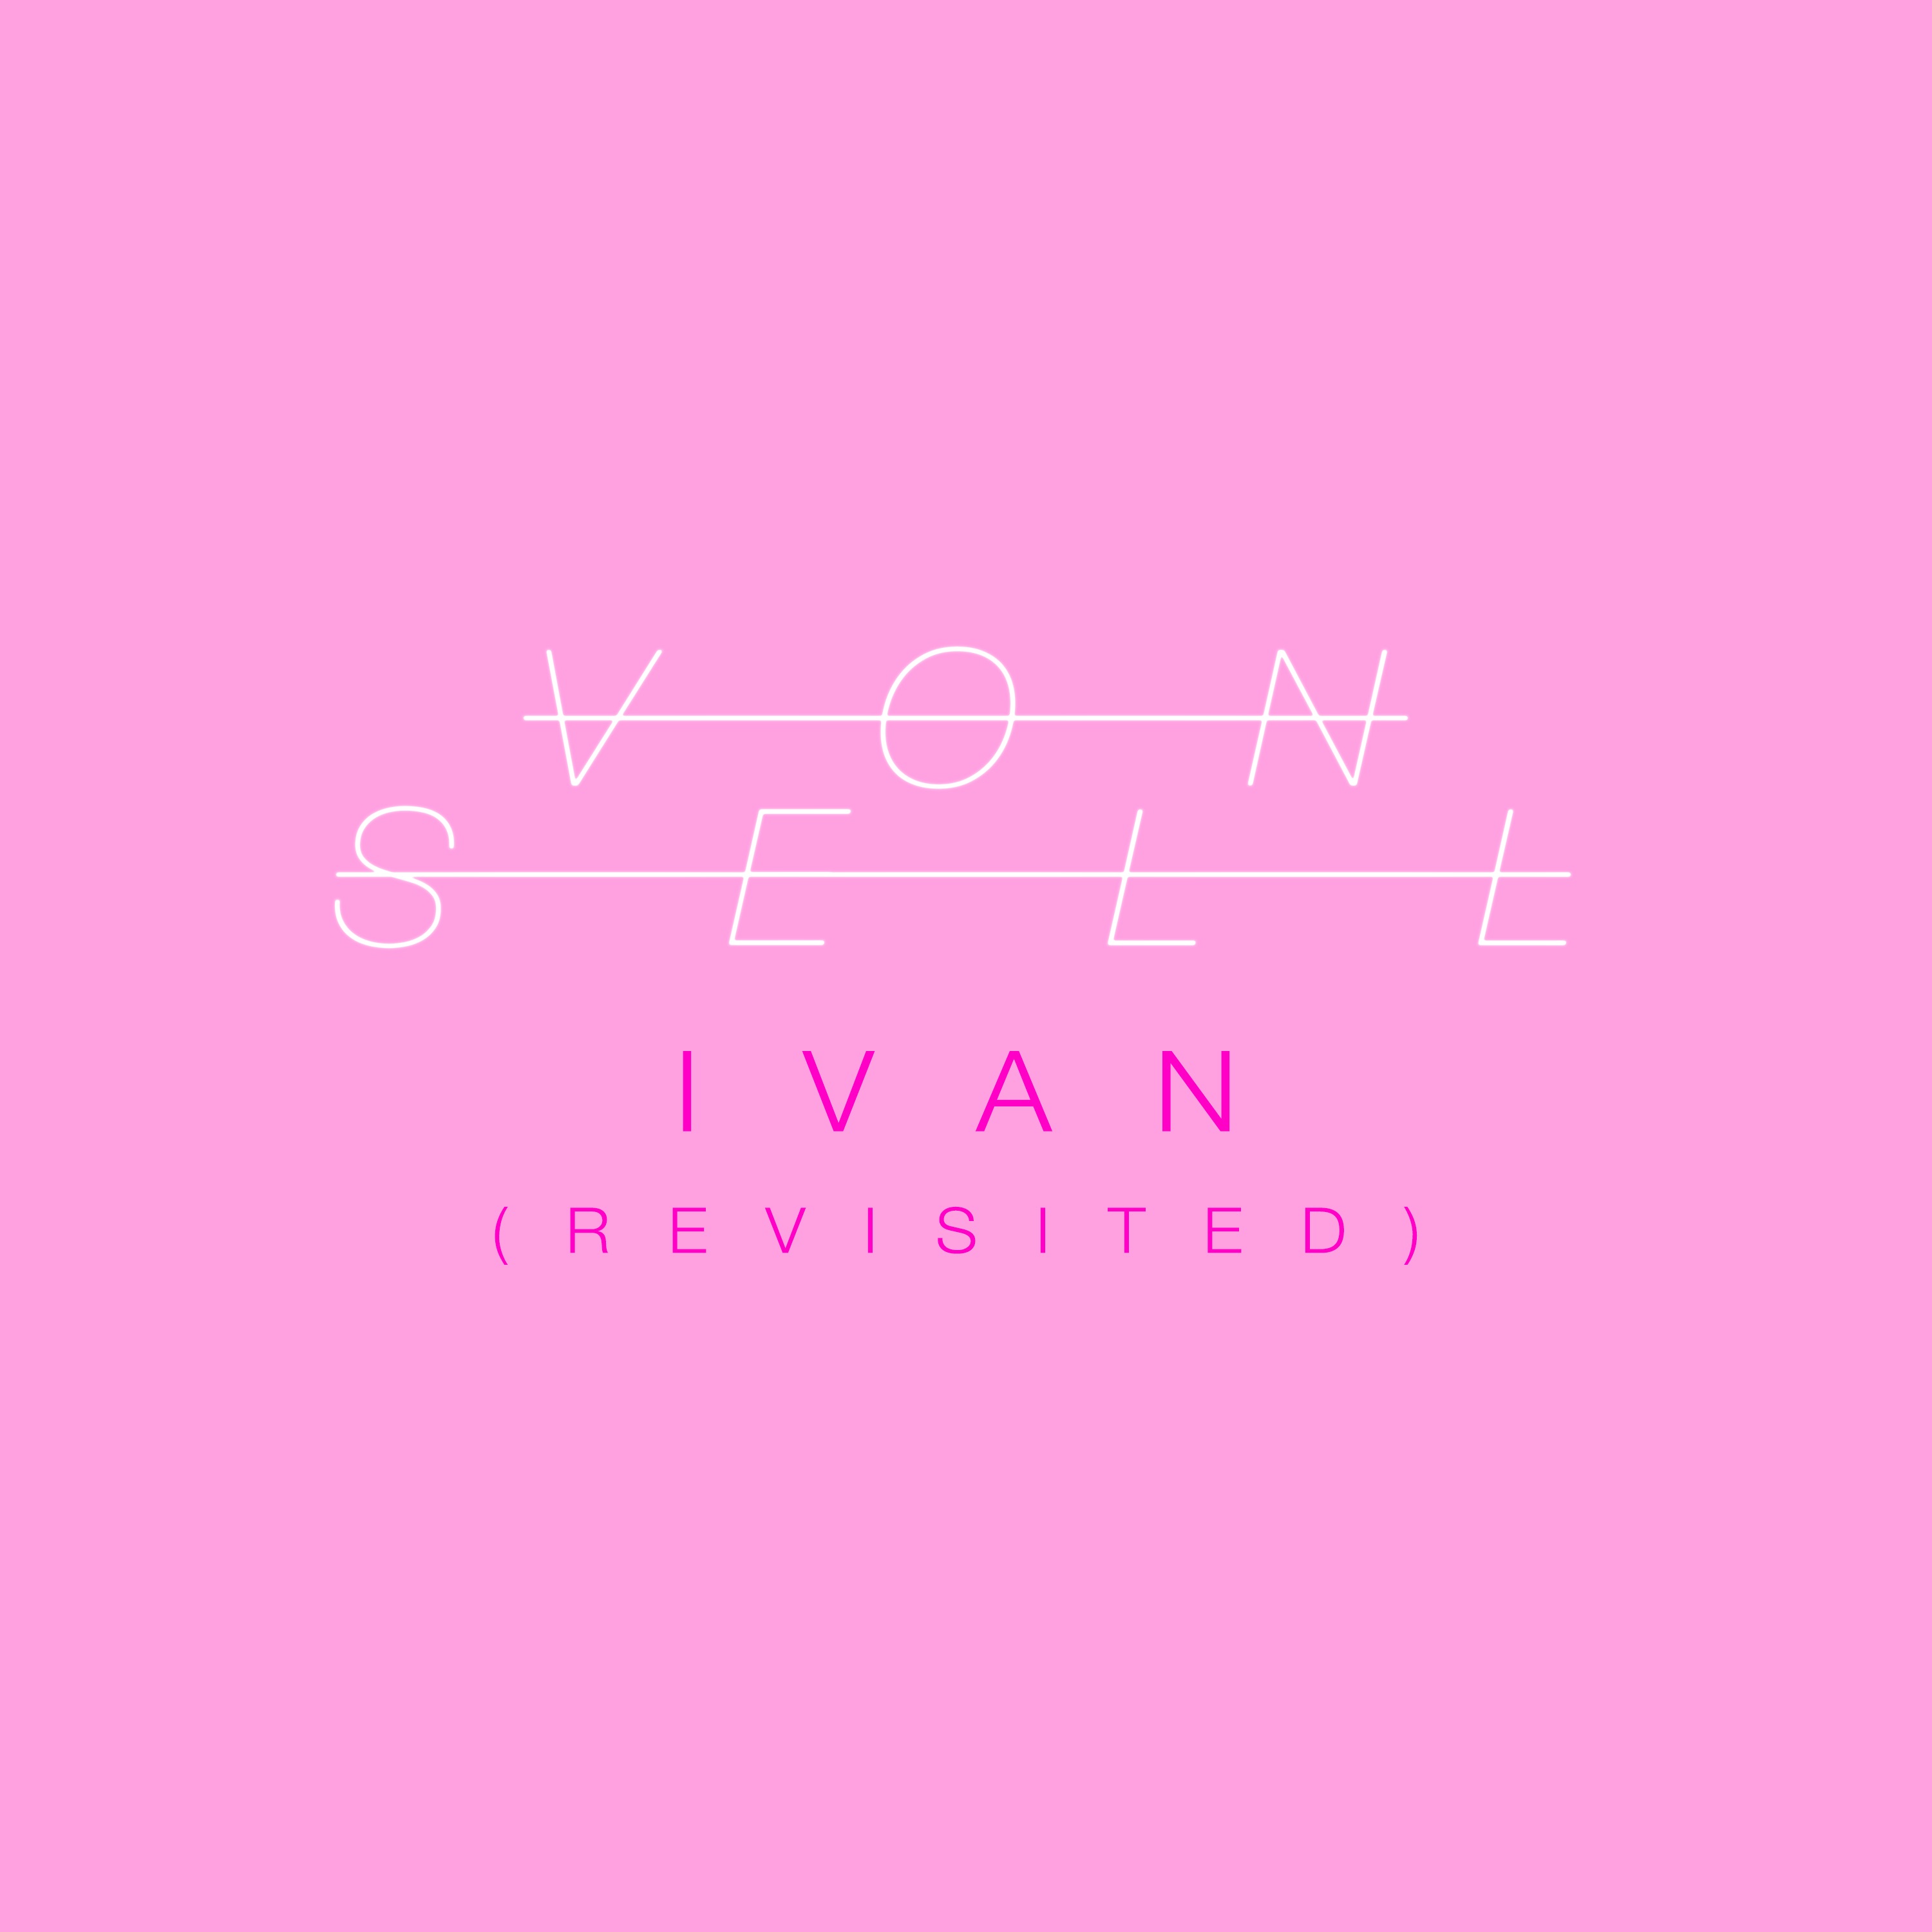 Von Sell – “Ivan (Revisited)”